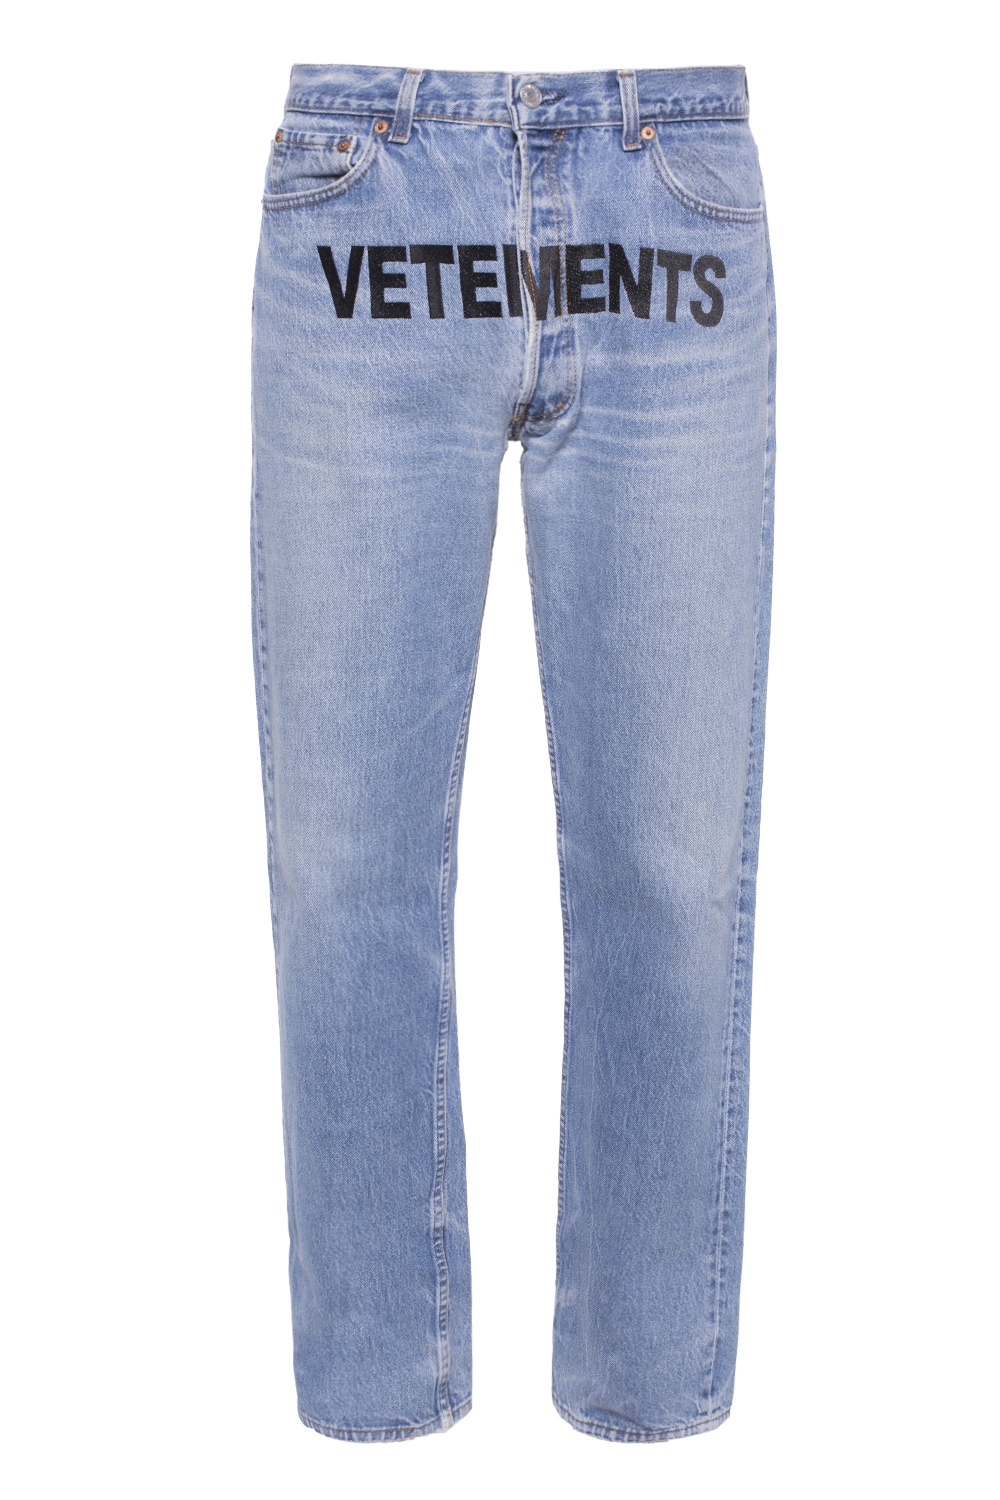 jeans vetements x levis